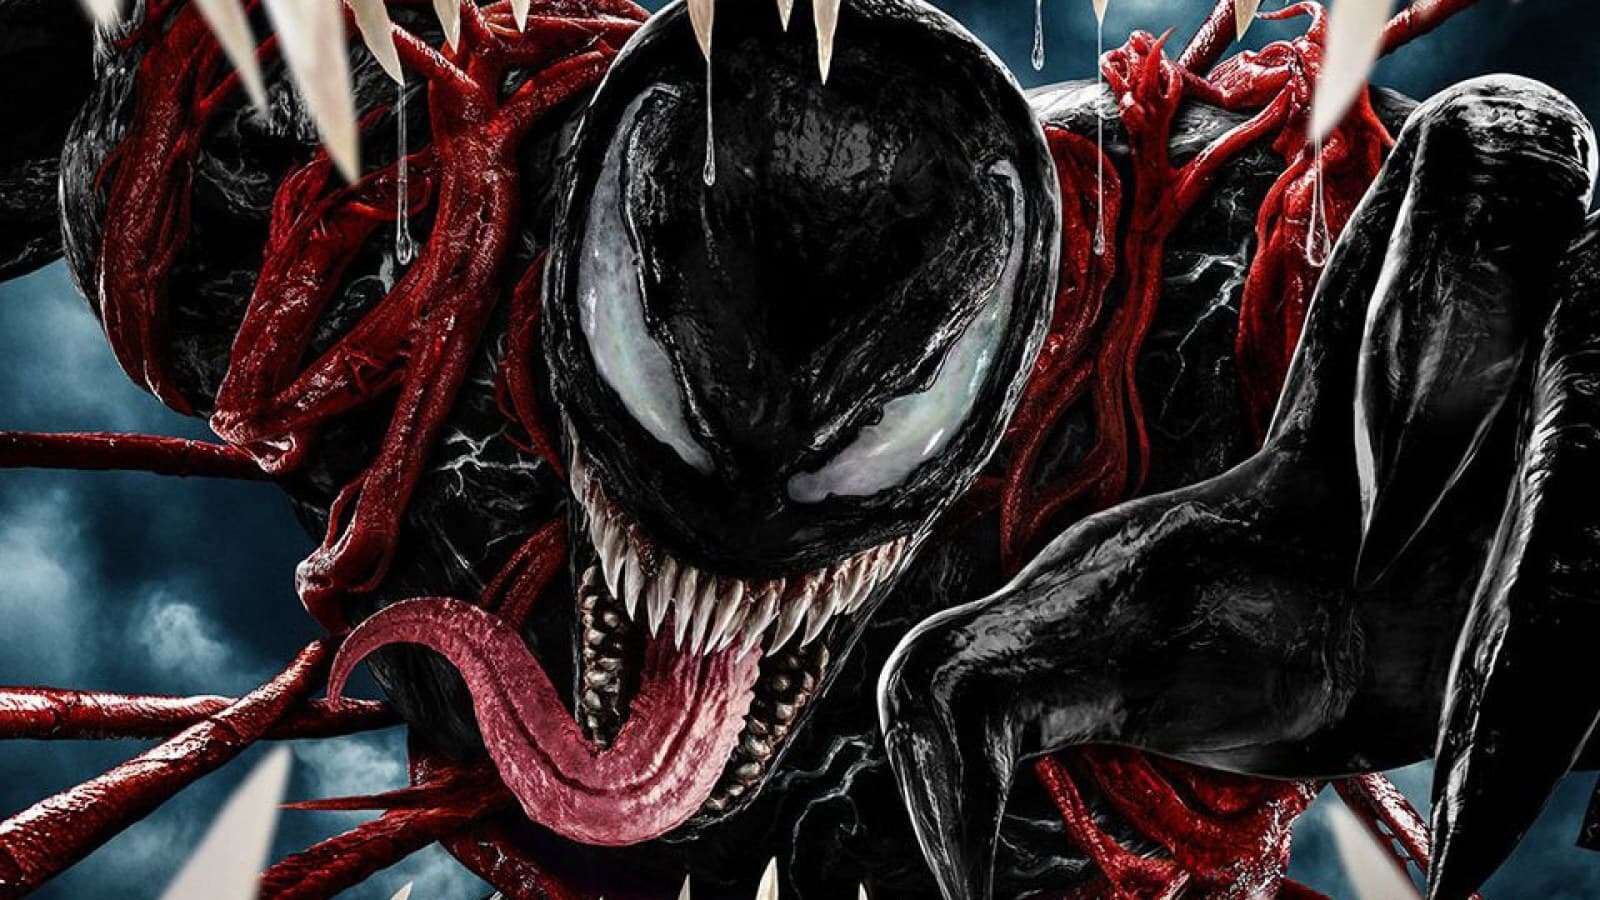 เวน่อม 2  Venom: Let There Be Carnage ออนไลน์โดยสมบูรณ์ในปี 2021